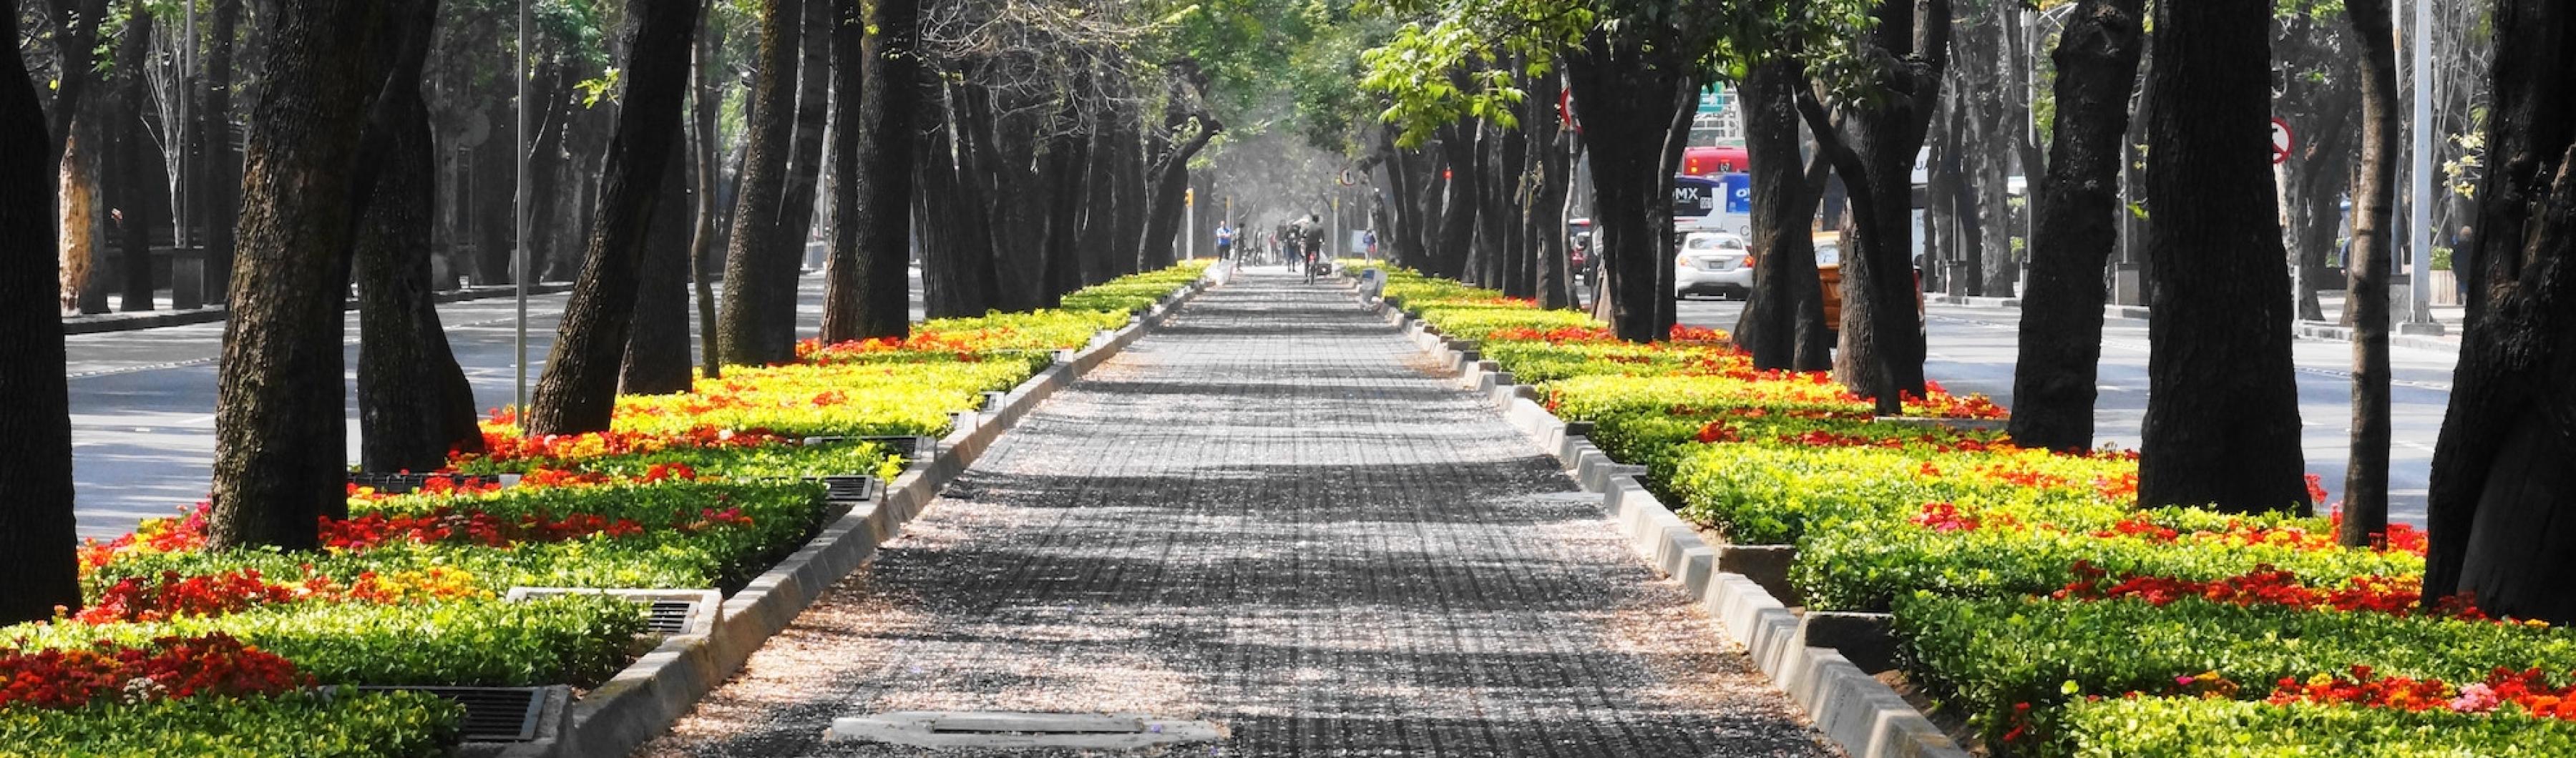 墨西哥城绿树成荫的街道